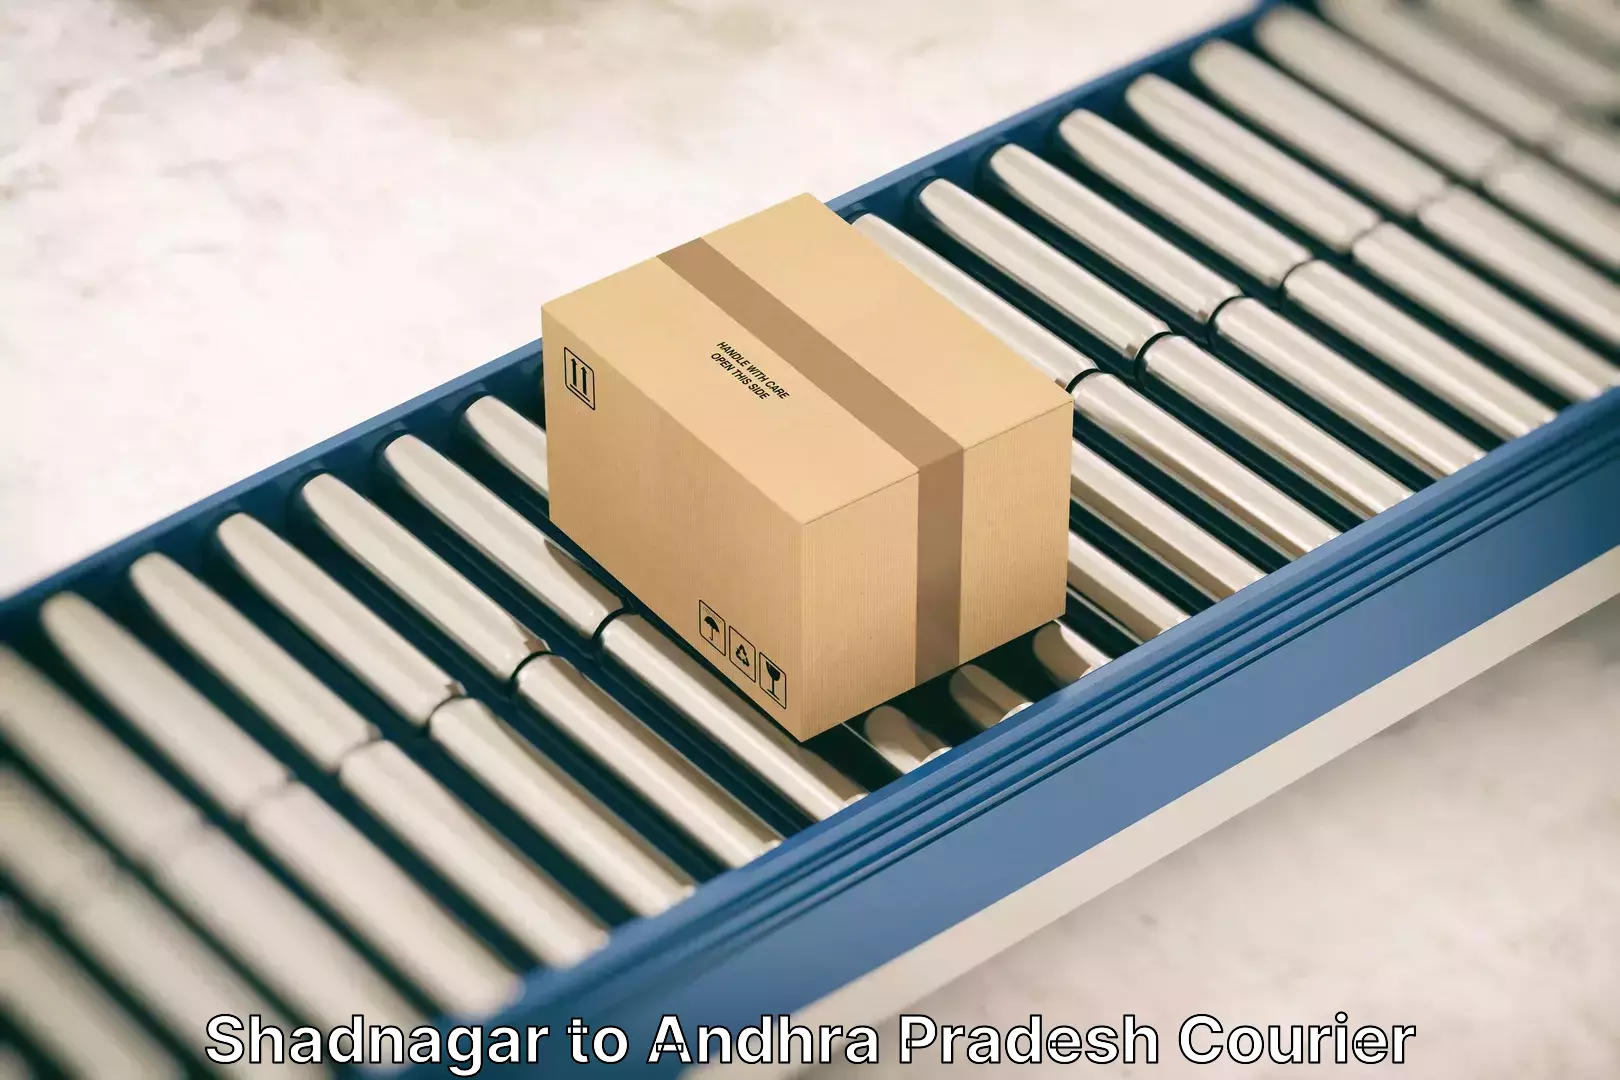 Furniture transport solutions Shadnagar to Andhra Pradesh